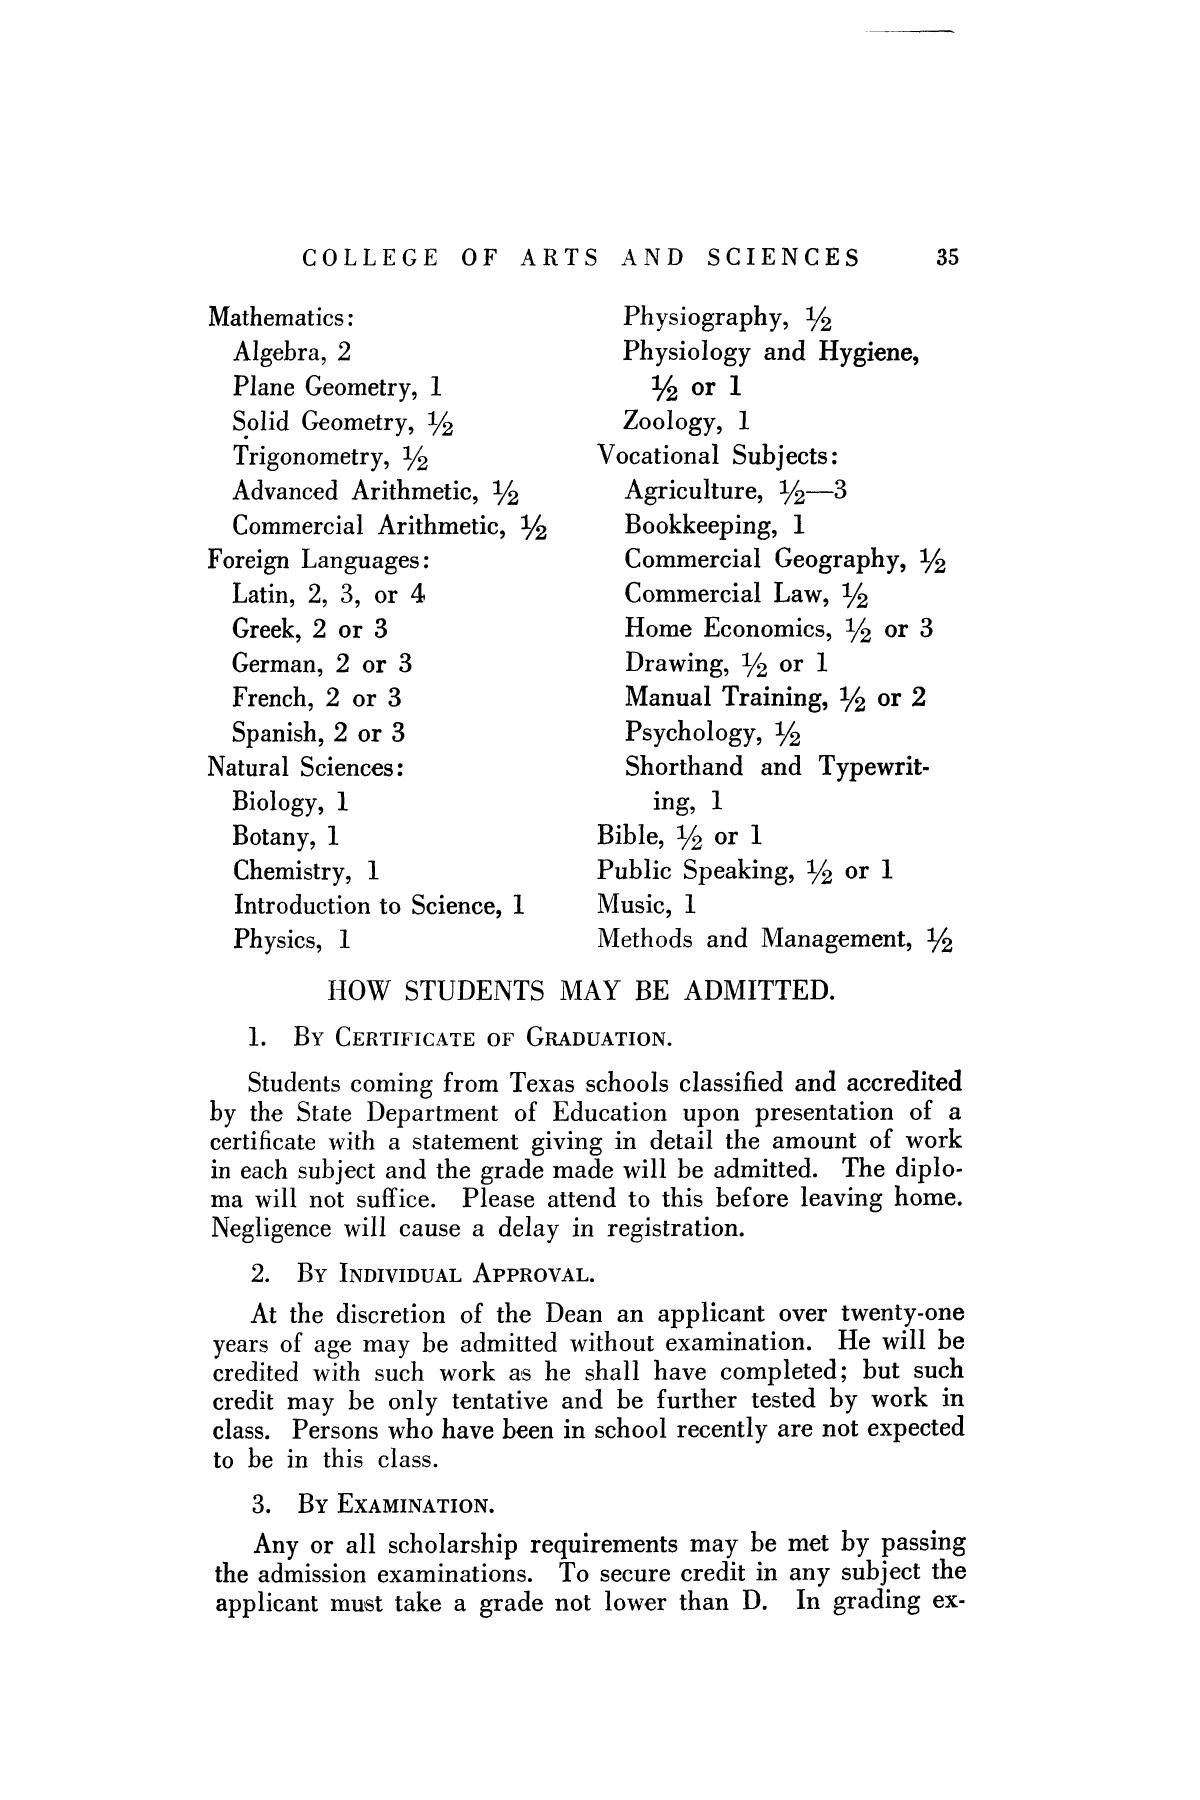 Catalog of Abilene Christian College, 1925-1926
                                                
                                                    35
                                                